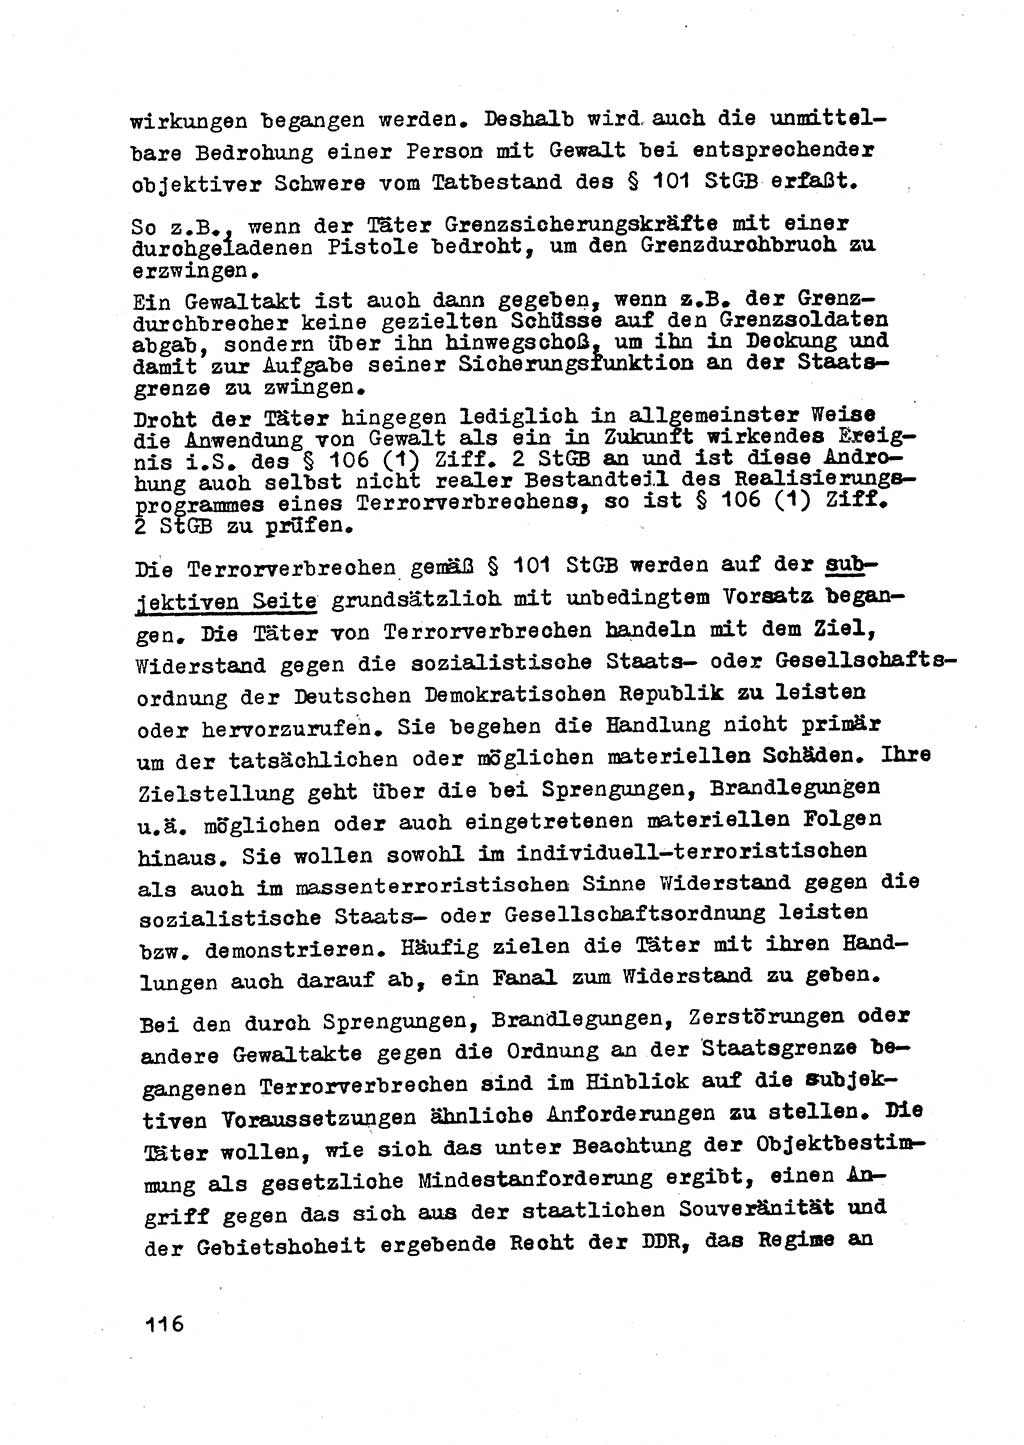 Strafrecht der DDR (Deutsche Demokratische Republik), Besonderer Teil, Lehrmaterial, Heft 2 1969, Seite 116 (Strafr. DDR BT Lehrmat. H. 2 1969, S. 116)